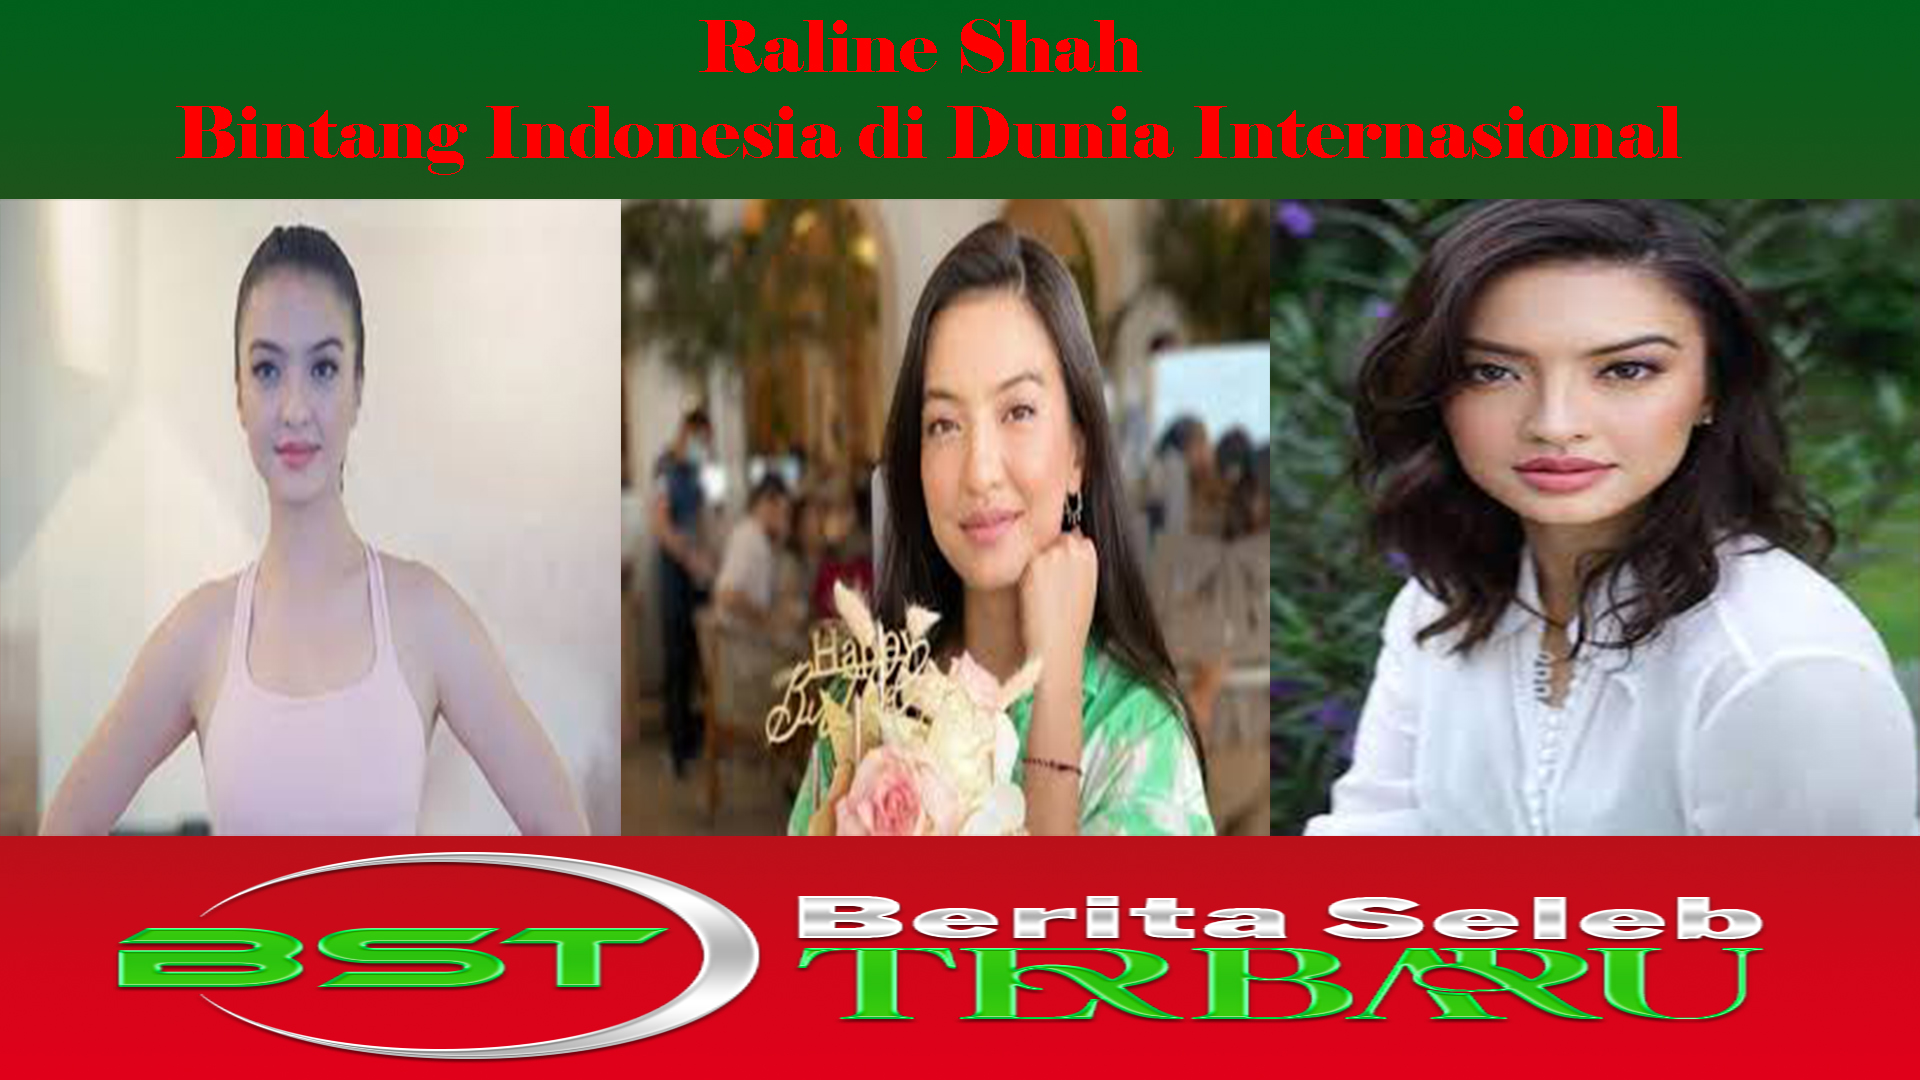 Raline Shah: Bintang Indonesia di Dunia Internasional